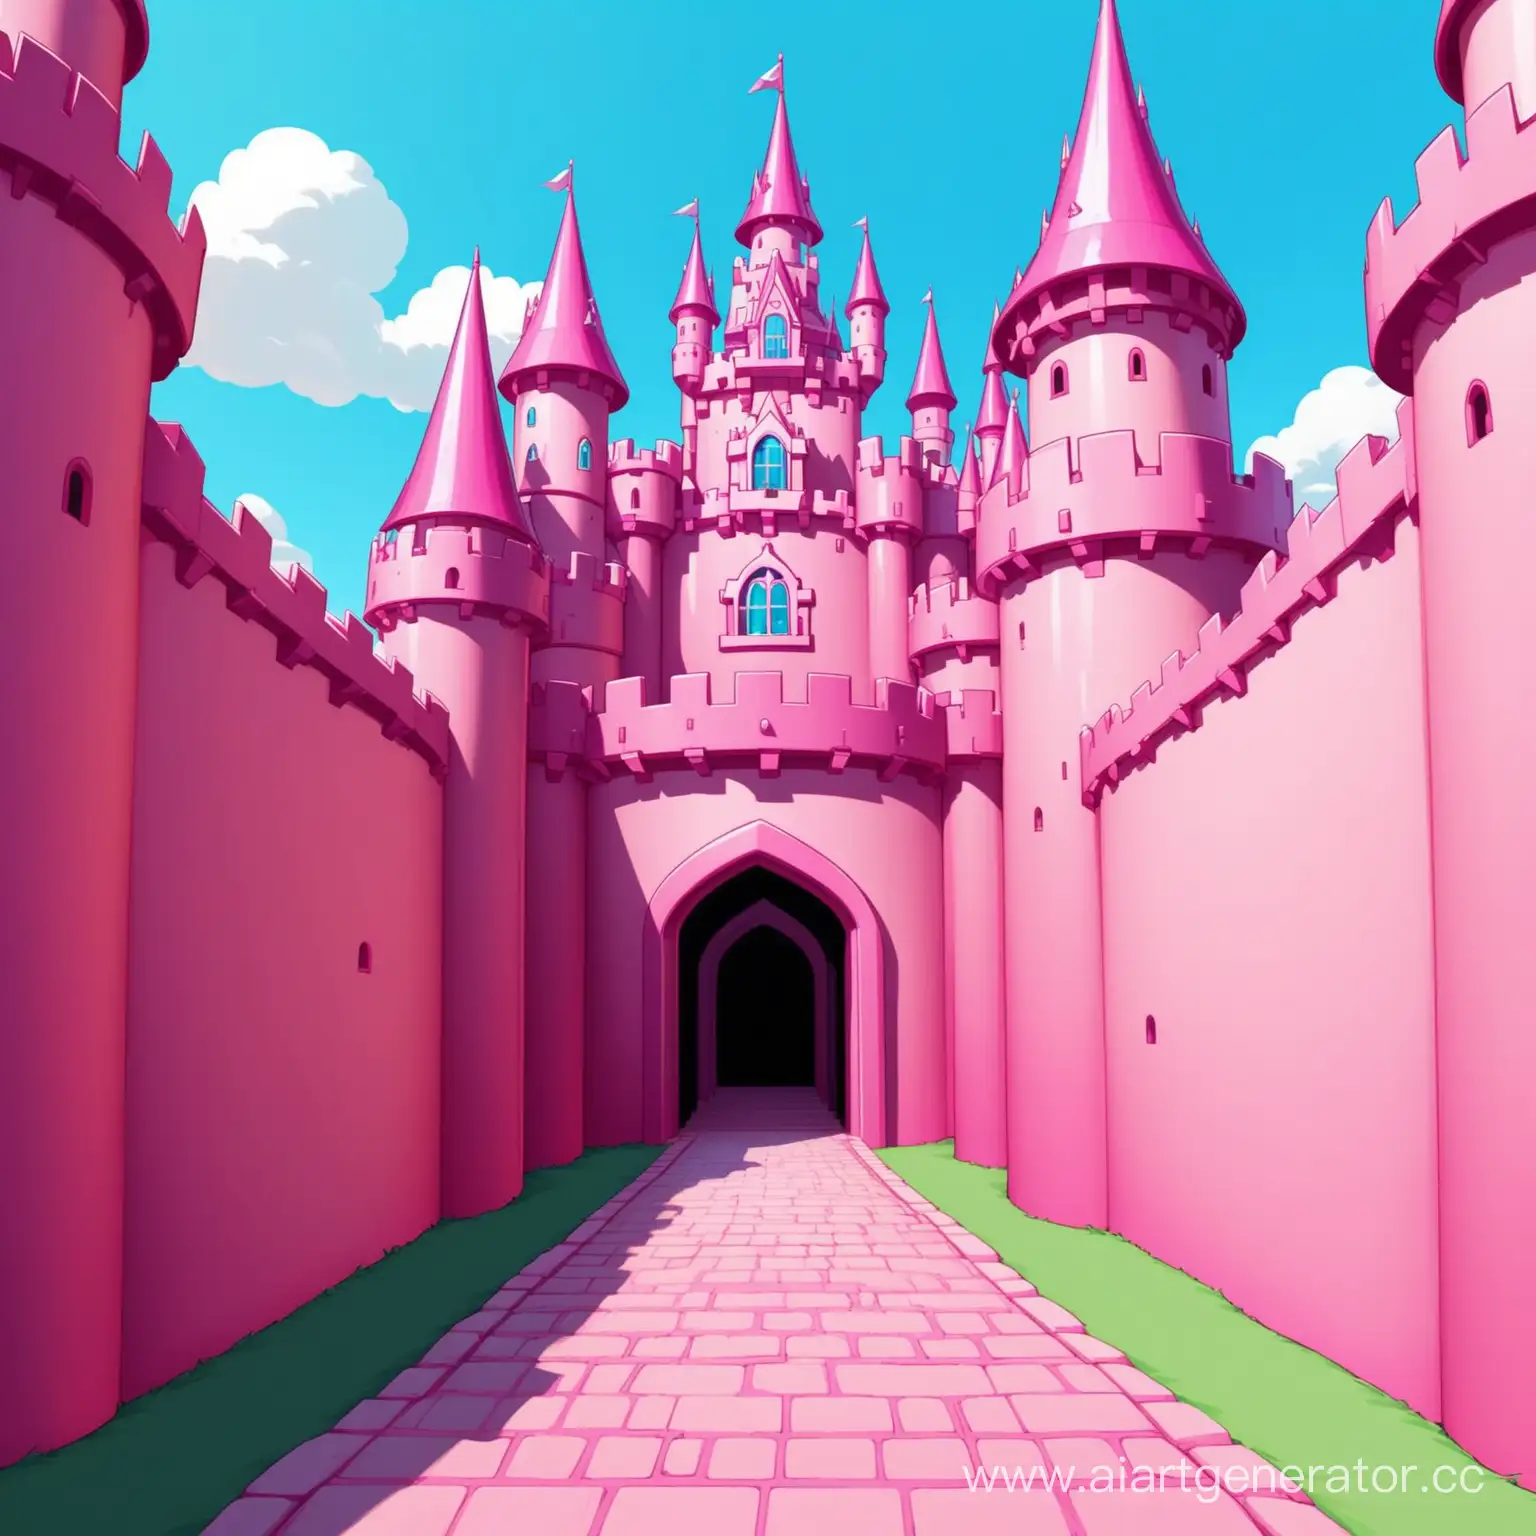 сгенерируй розовый замок в мультяшном стиле так чтобы вид на него был перед входом в него то бишь камера должна стоять на тропе как будто бы от первого лица человека